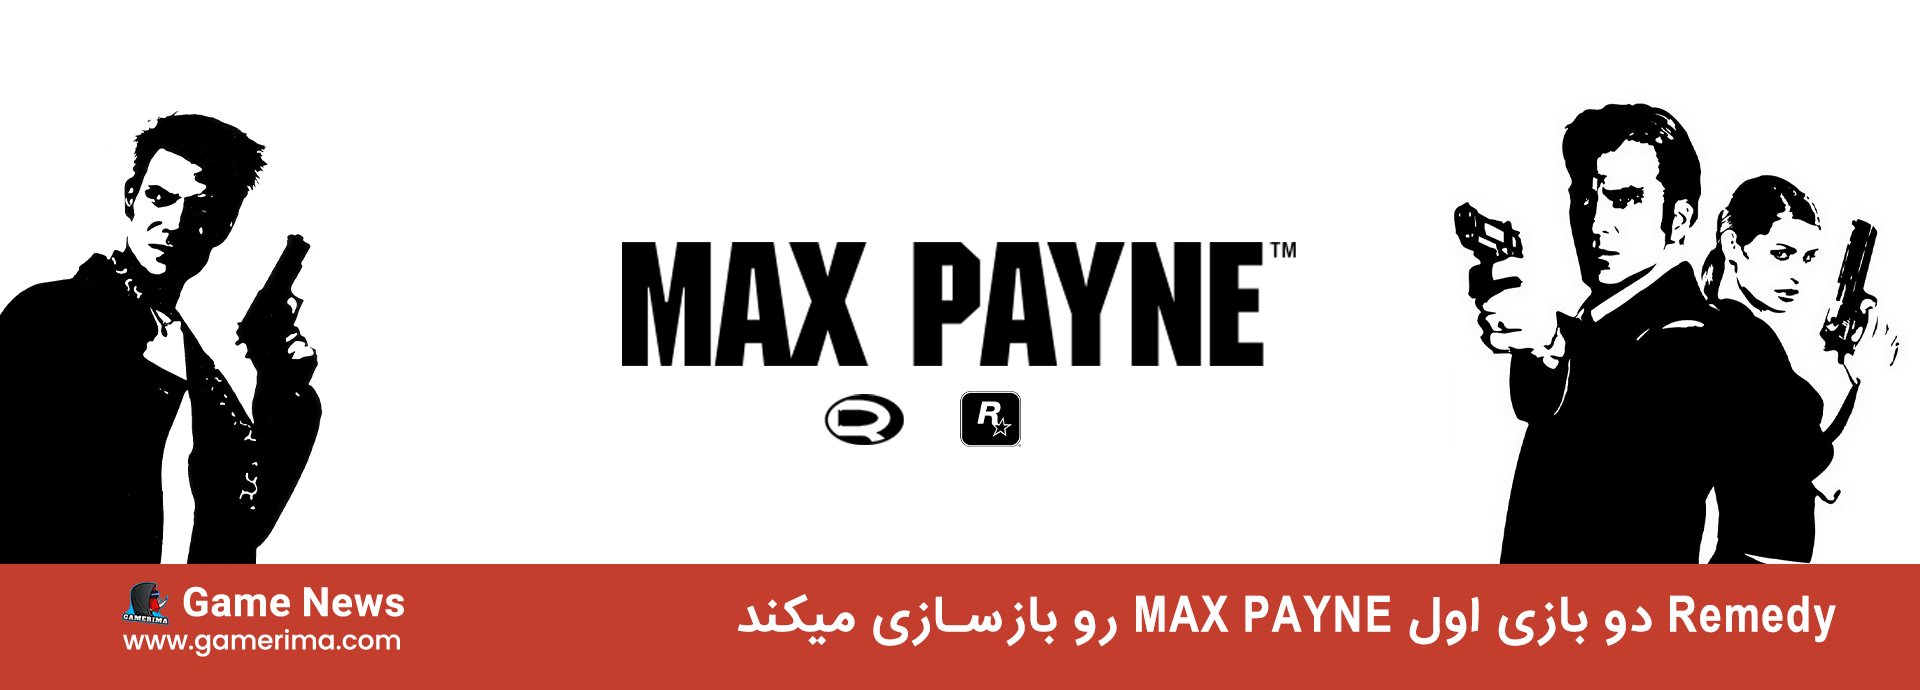 max payne 12